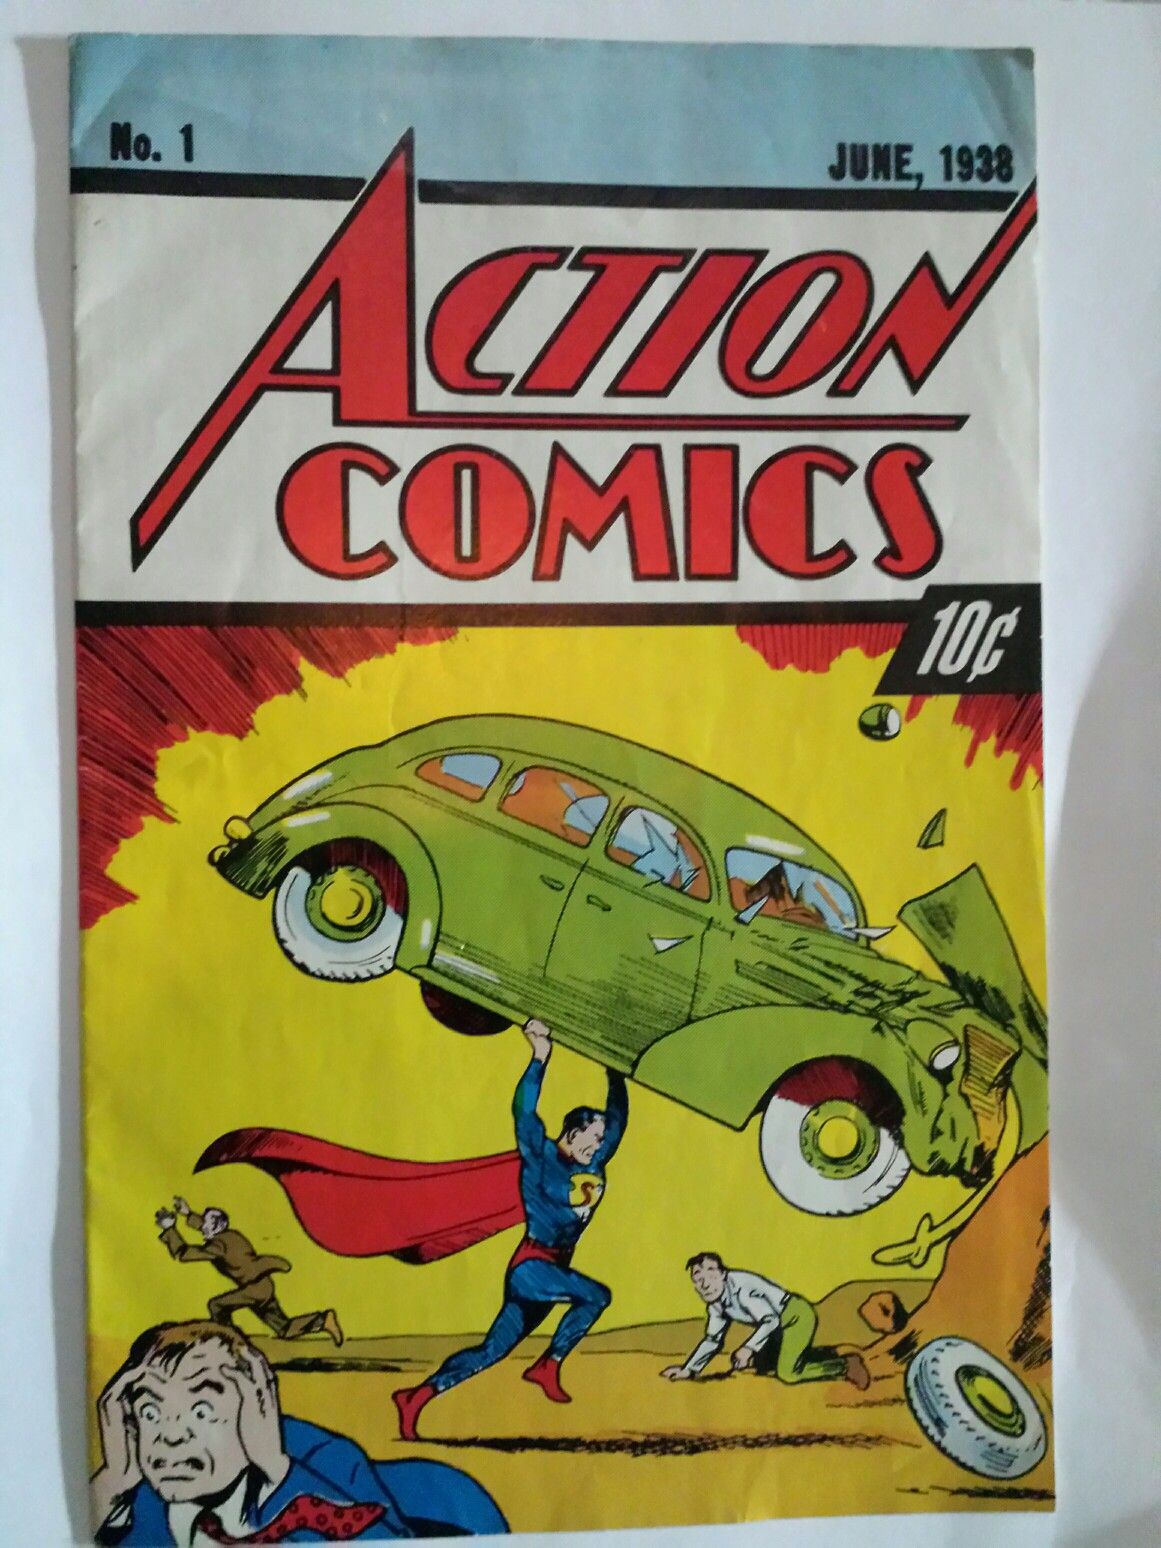 Superman DC Action Comics #1 No 1 June 1938 Replica Reprint